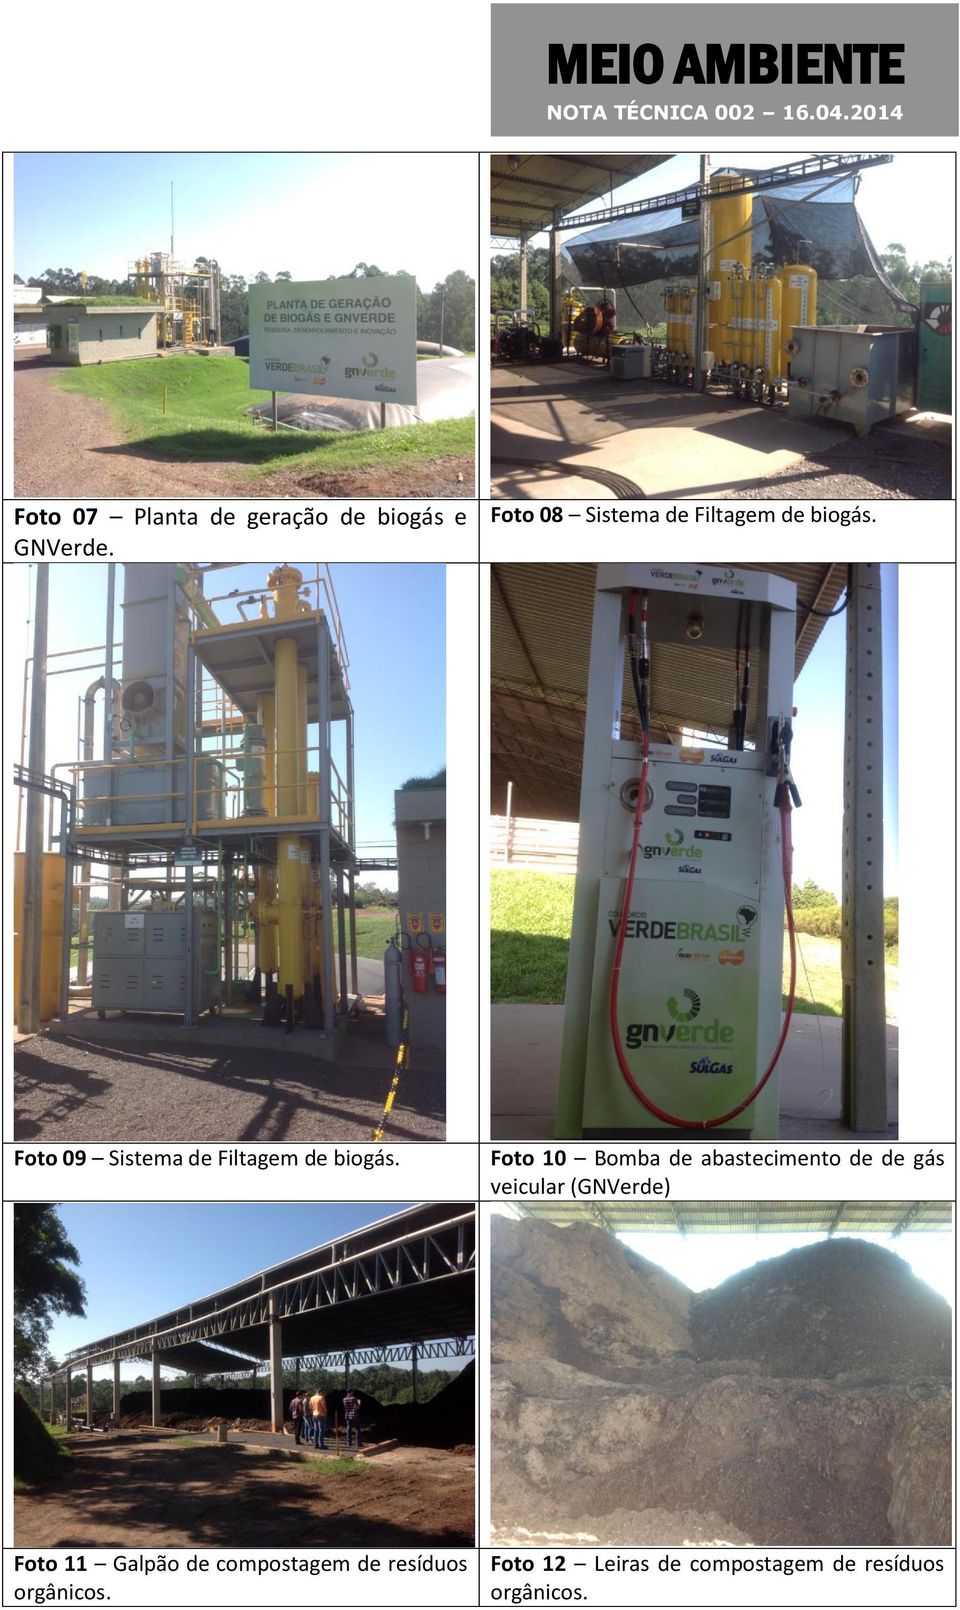 Foto 09 Sistema de Filtagem de biogás.